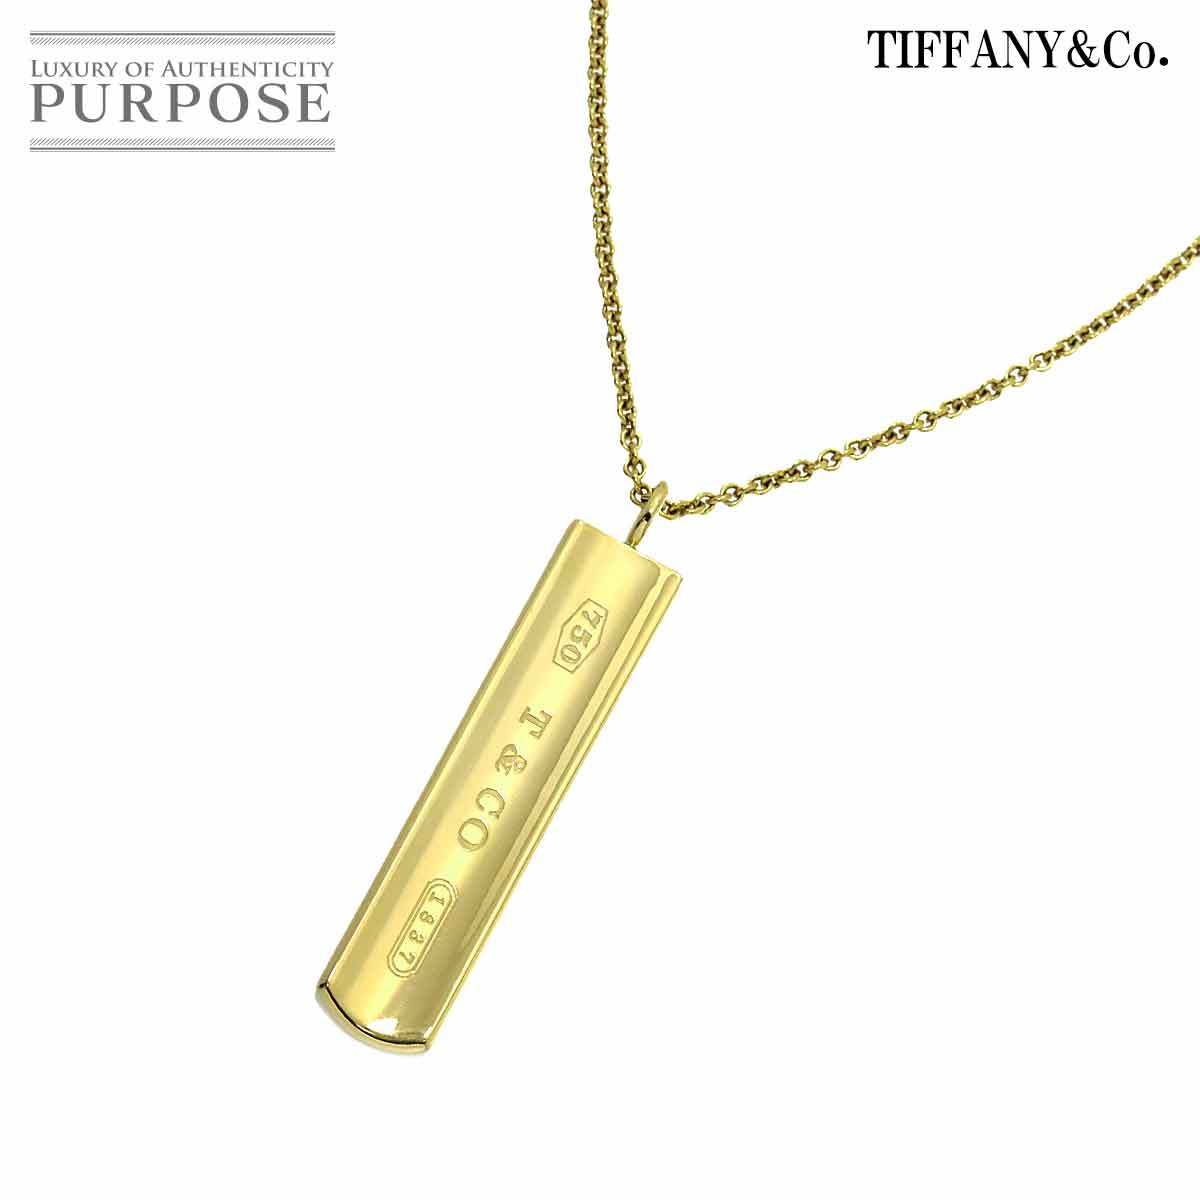 ティファニー TIFFANY&Co. 1837 バー ネックレス 45cm K18 YG イエローゴールド 750 Necklace Necklace 90205411